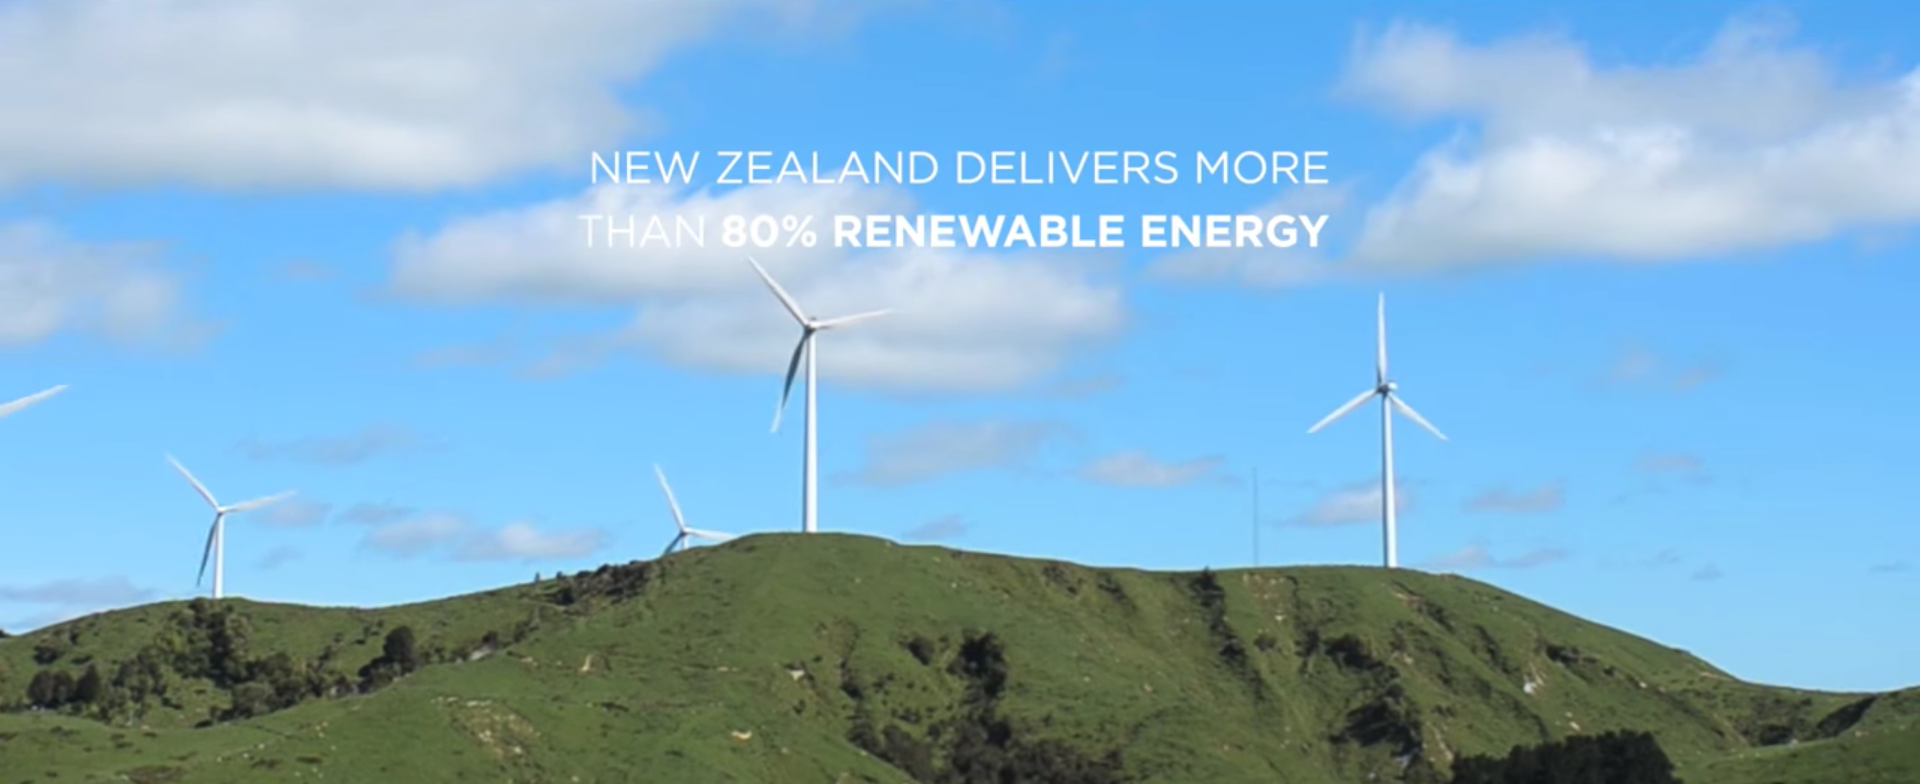 New Zealand delivering 80% renewable energy. Photo by: Tesla Motors / YouTube